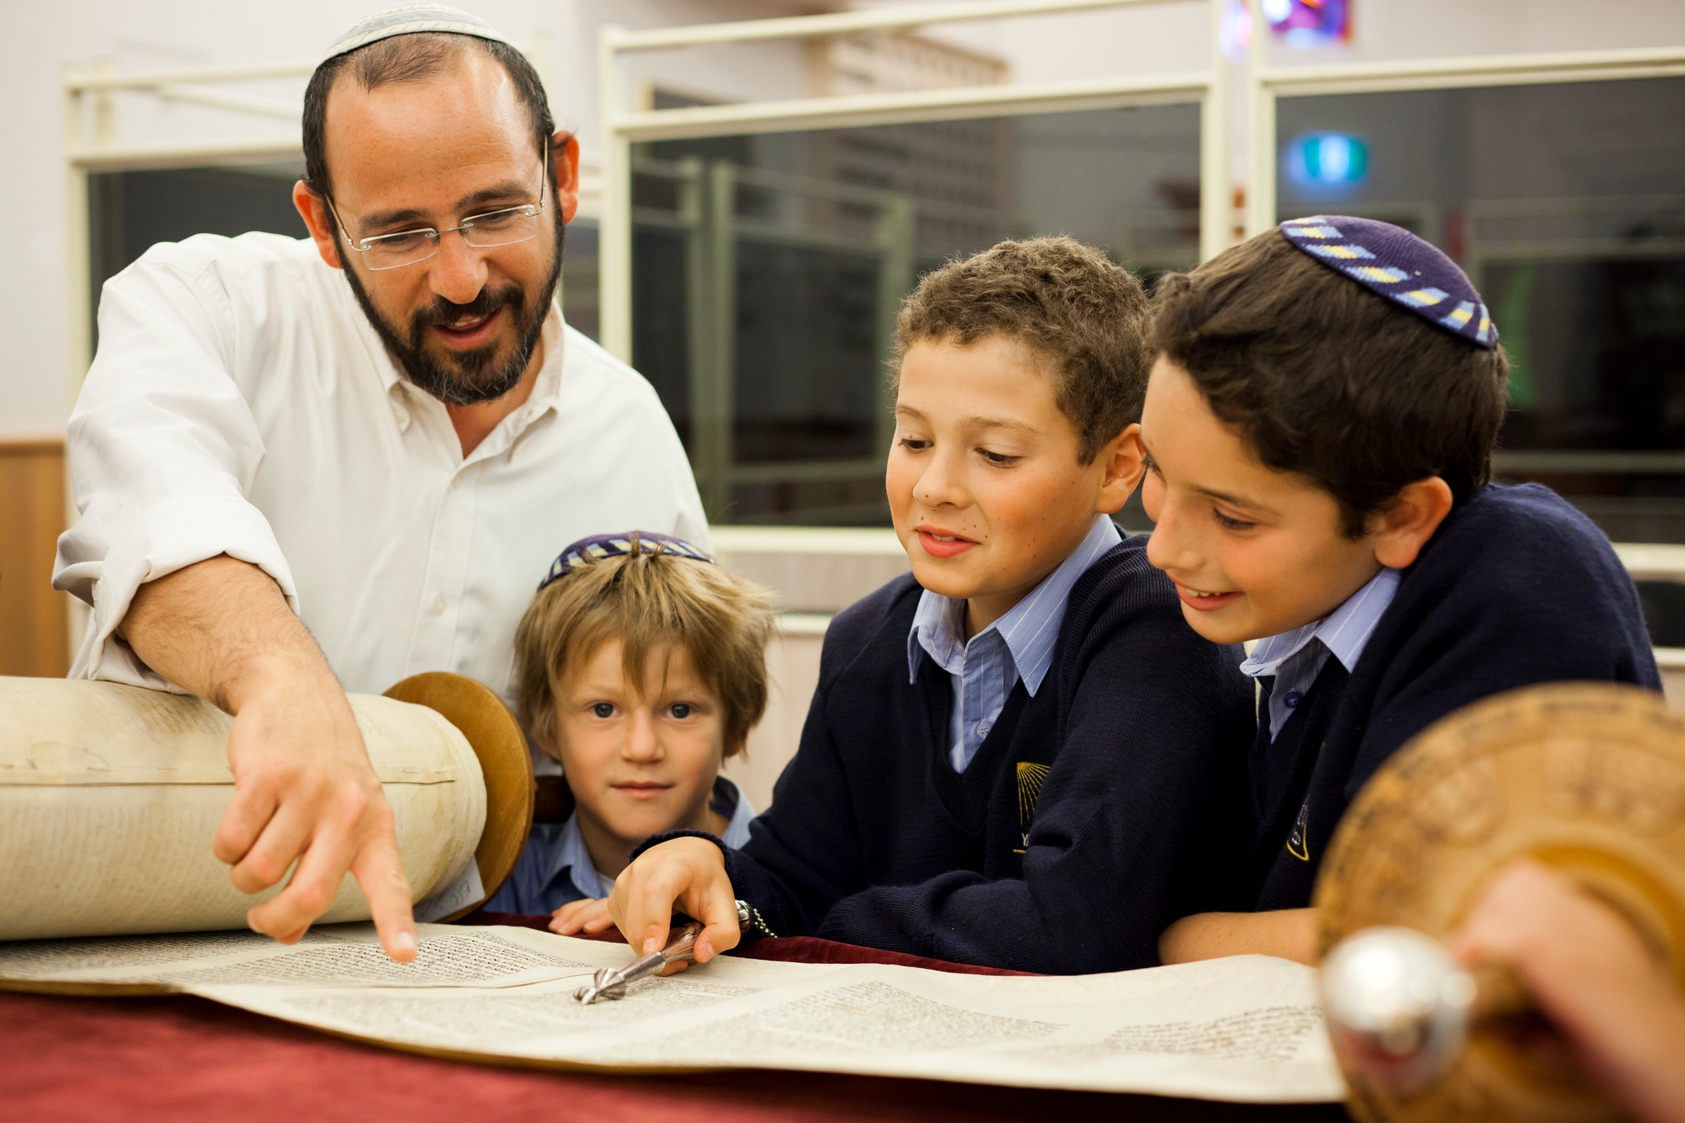 Vì sao người Do Thái chiếm tới 11,6% tỷ phú trên thế giới? Nguyên nhân đến từ 8 cách giáo dục thông minh, cha mẹ nào cũng nên tham khảo - Ảnh 2.